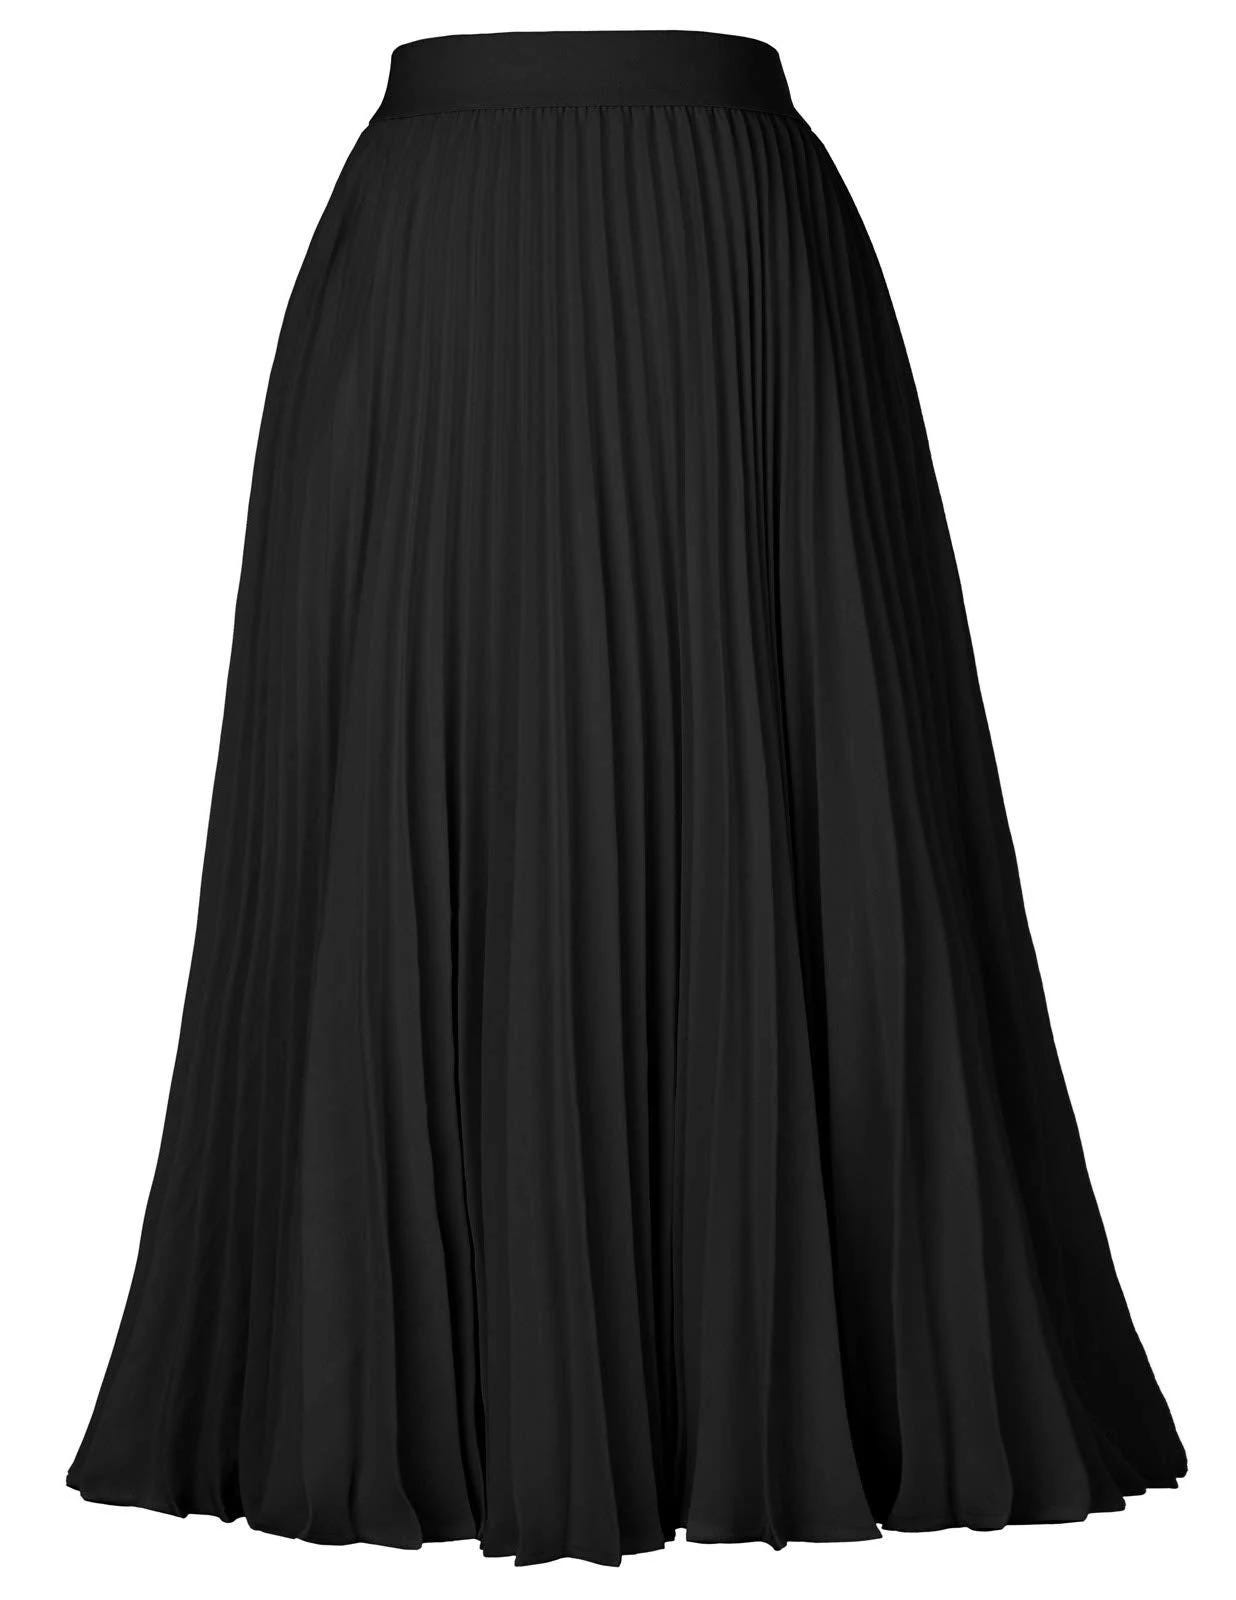 Elegant Pleated High Waist Midi Skirt for Women | Image